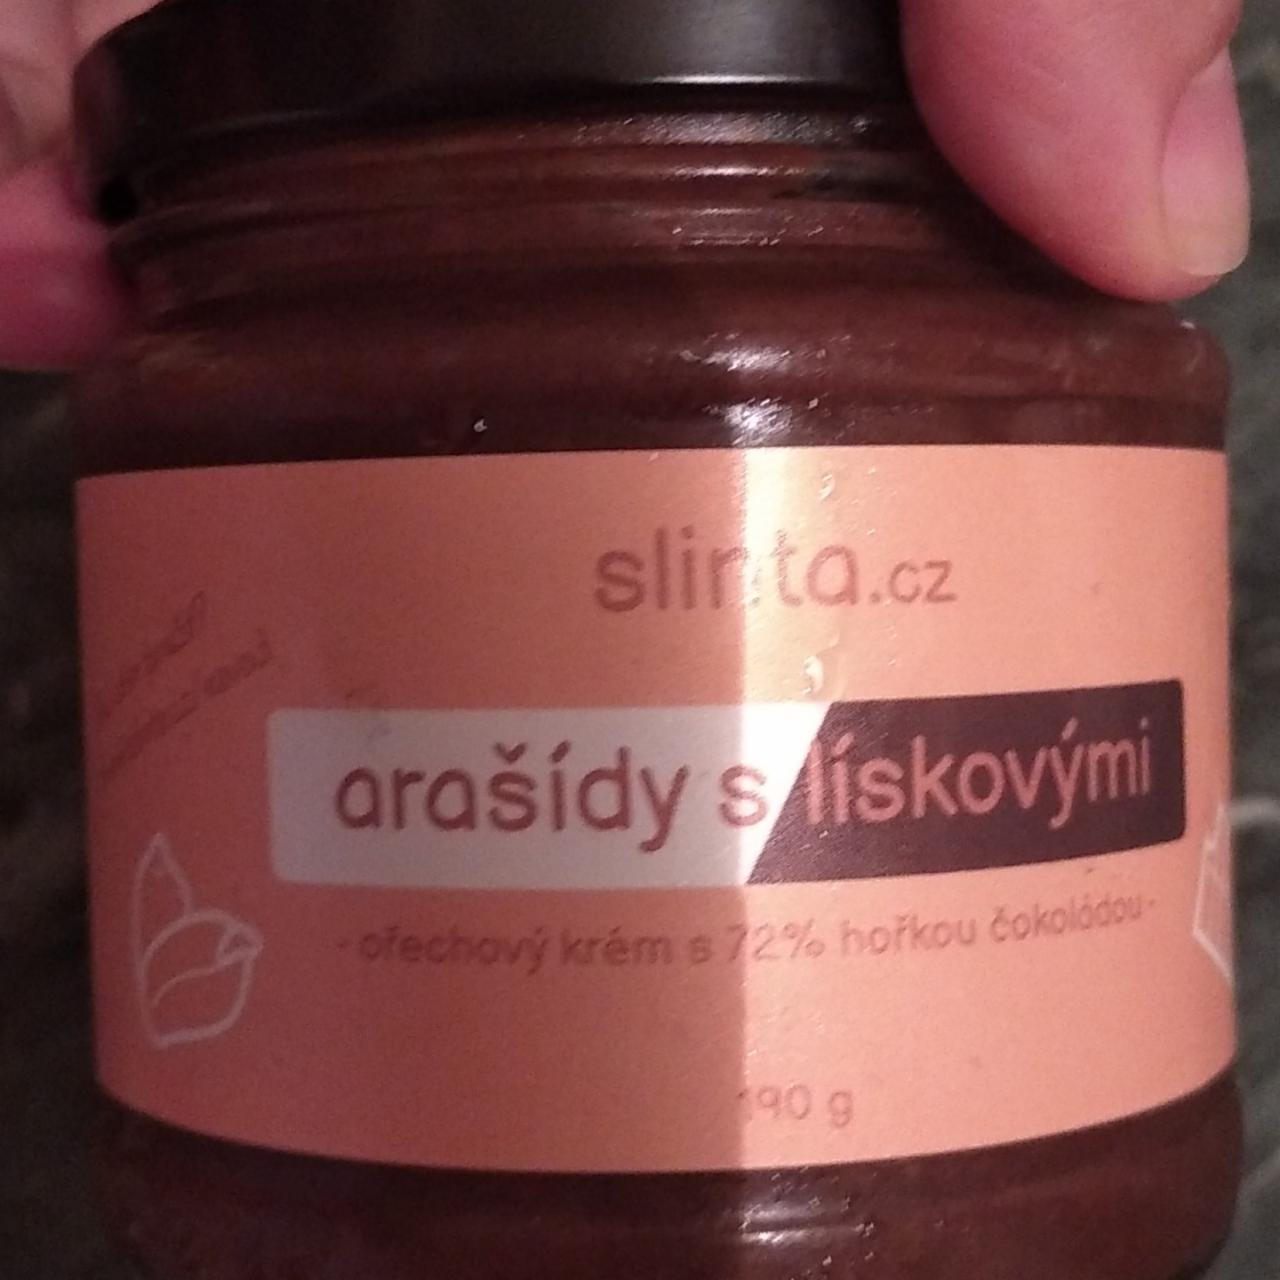 Fotografie - Arašídy s lískovými oříškový krém s 72% hořkou čokoládou Slinta.cz